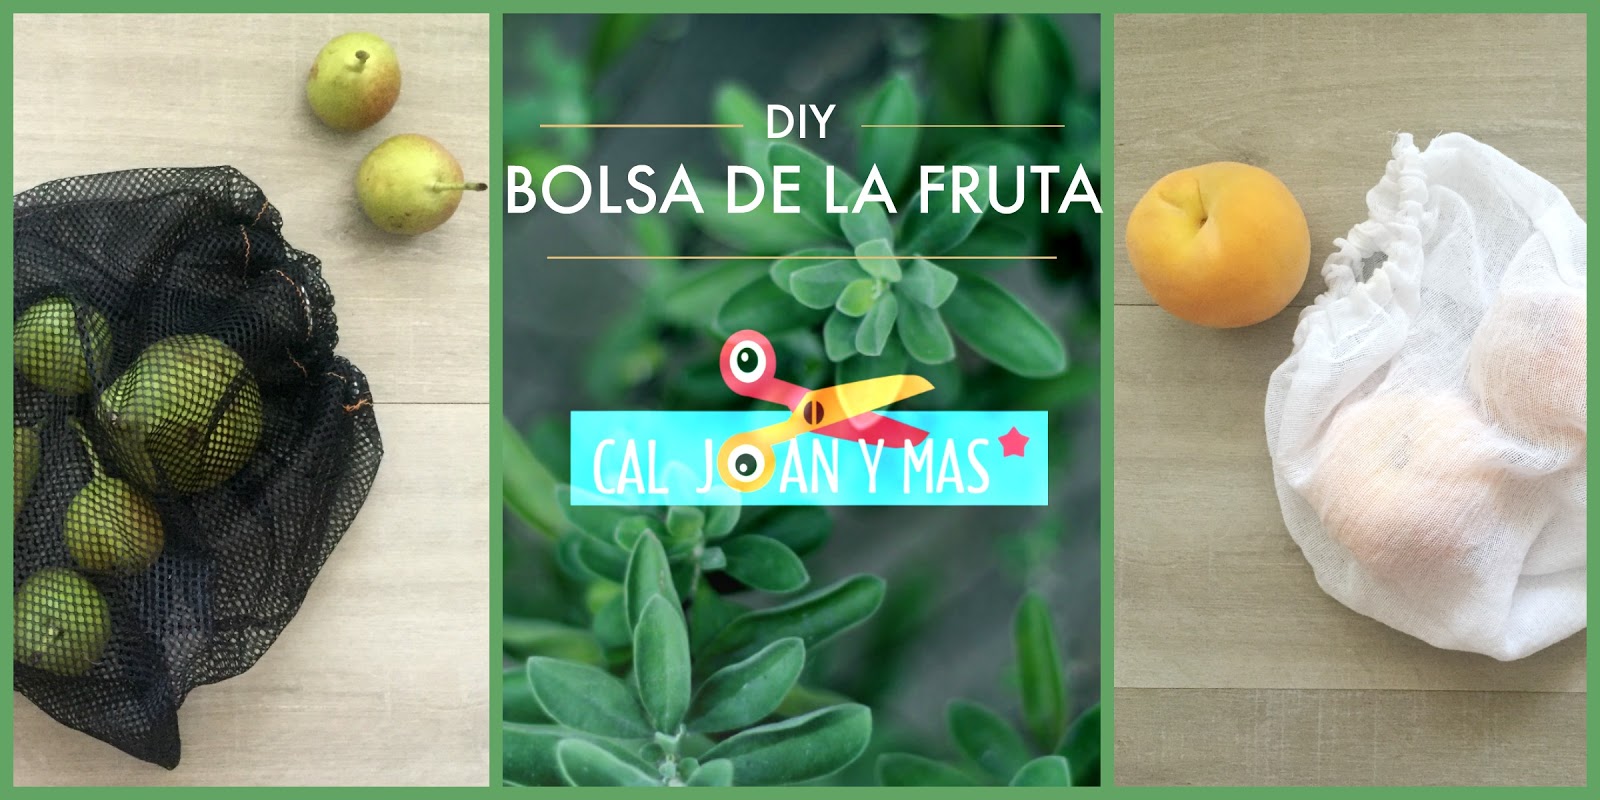 Cal Joan y más: BOLSAS LA FRUTA DE TELA (DIY)